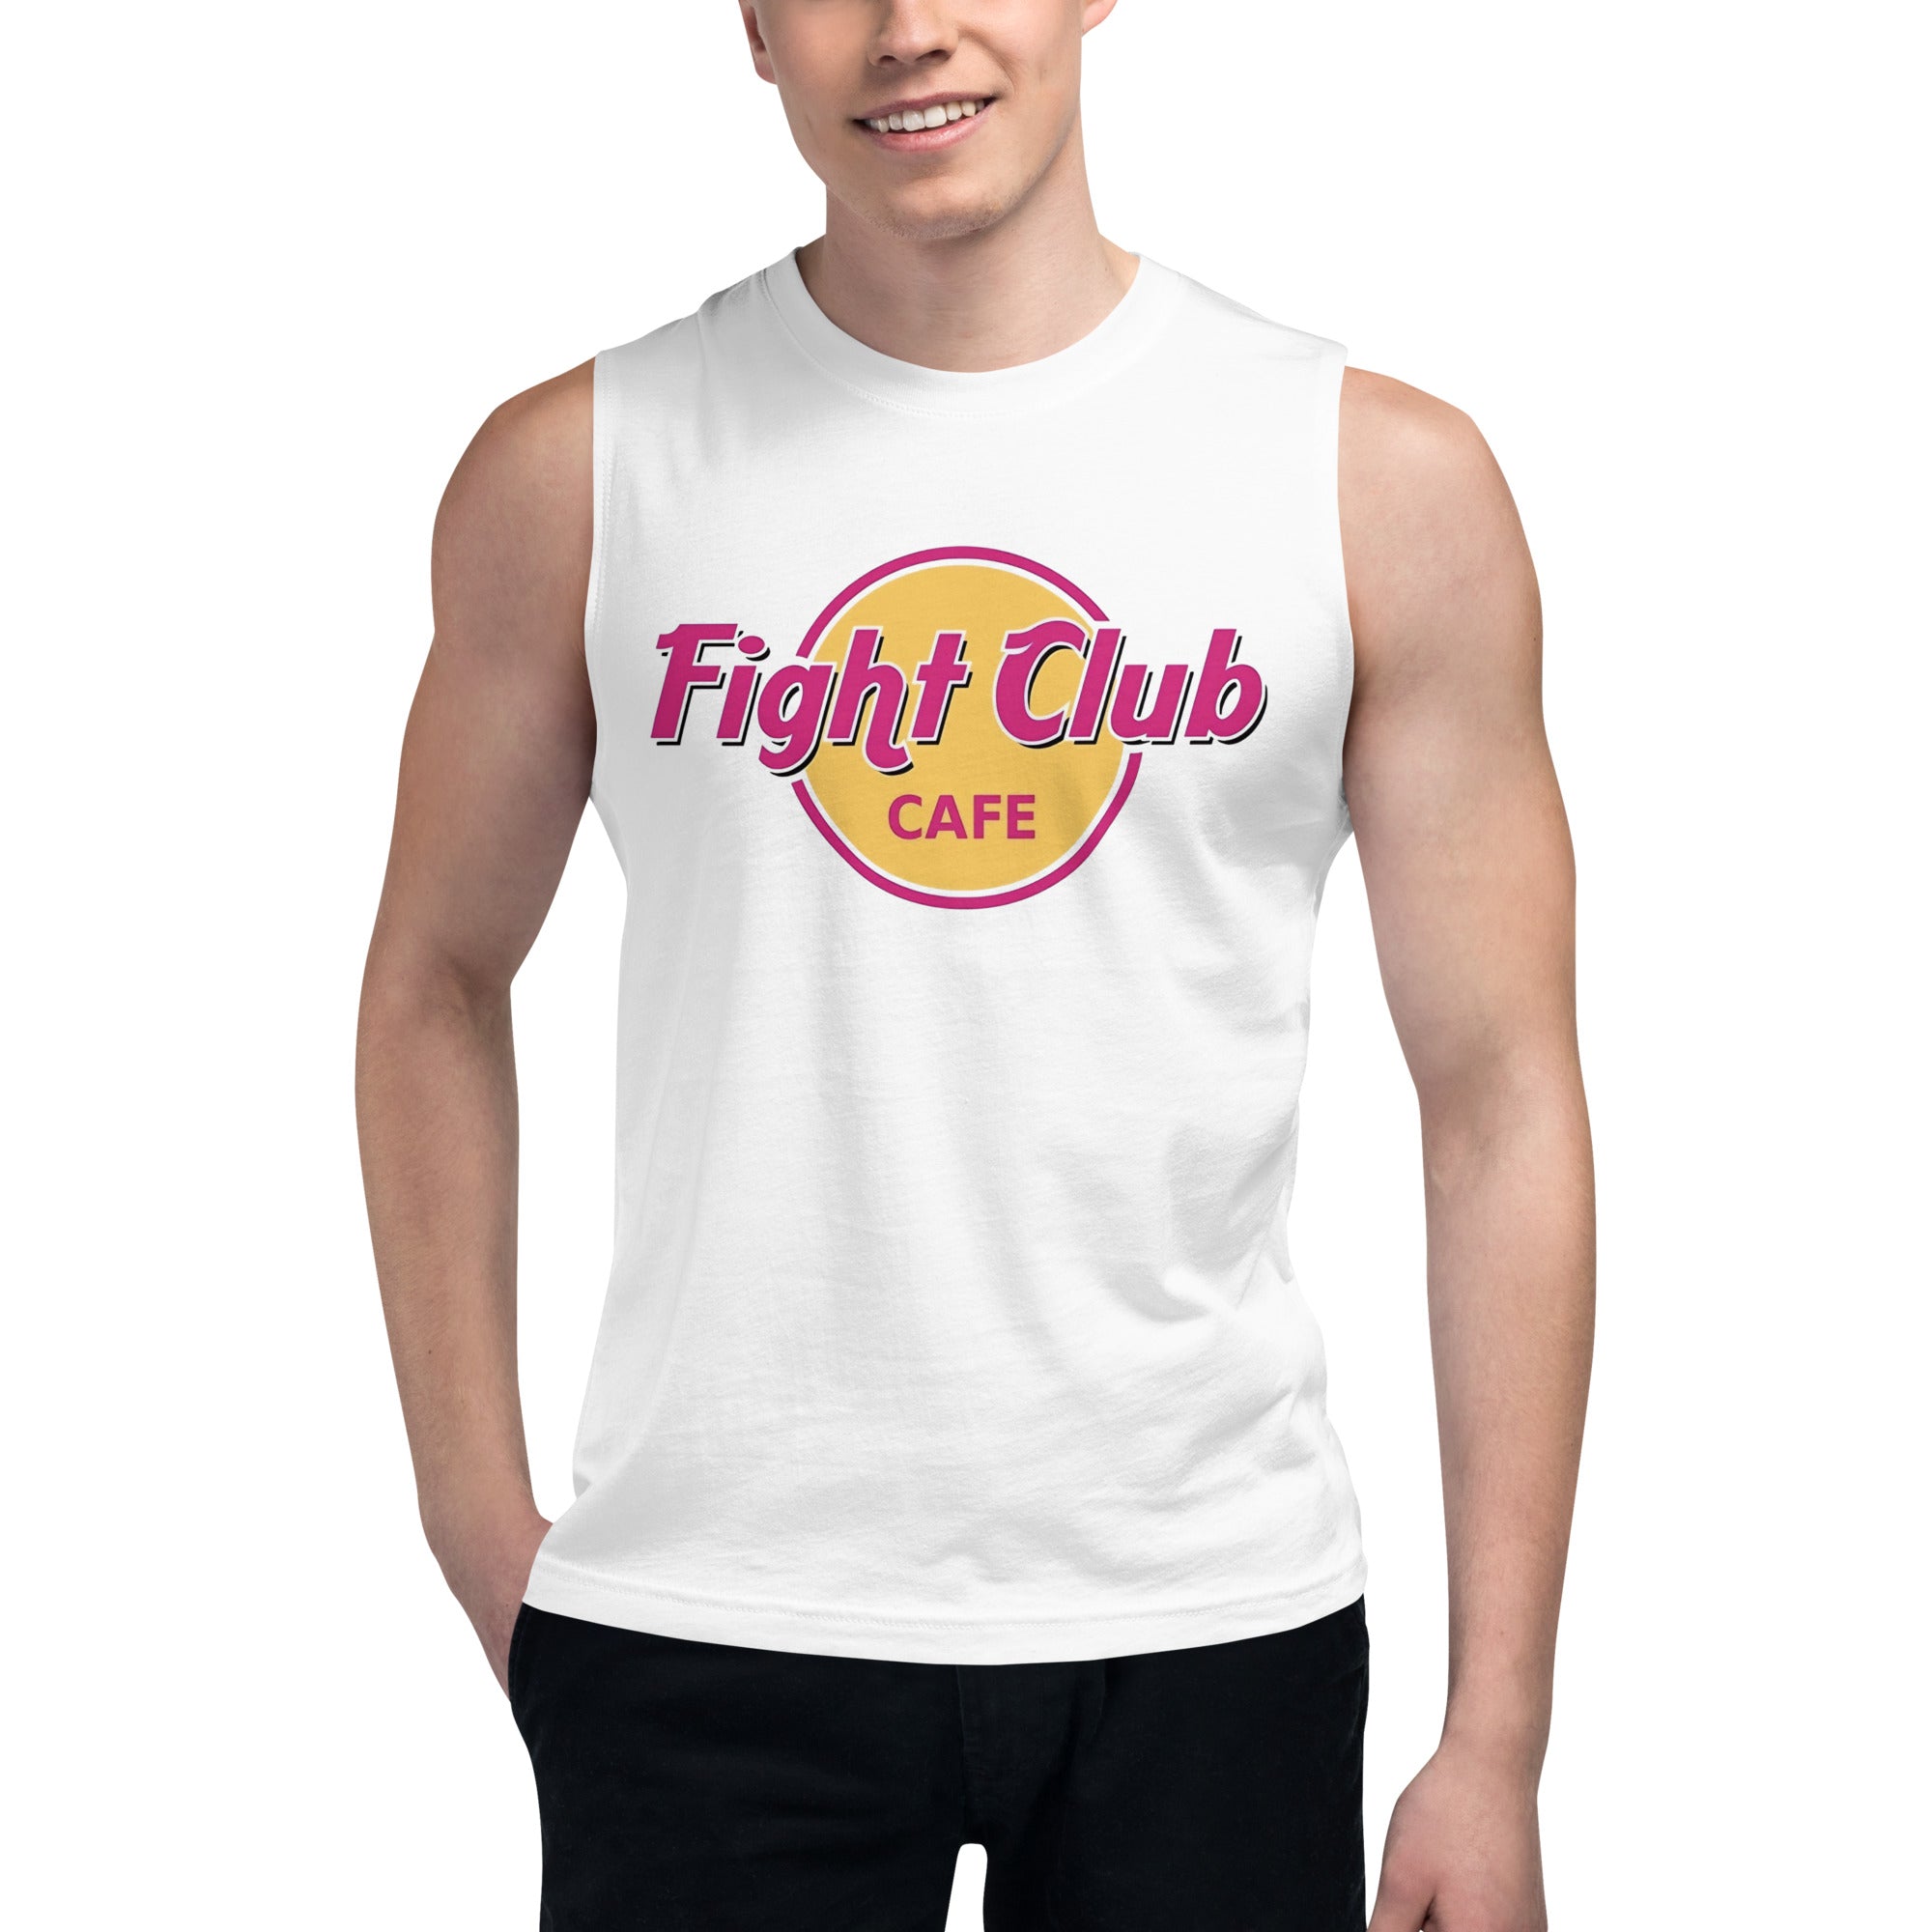 Camiseta sin Mangas Fight Club Cafe, Nuestras Camisetas son unisex disponibles en la mejor tienda online, compra ahora en Superstar!